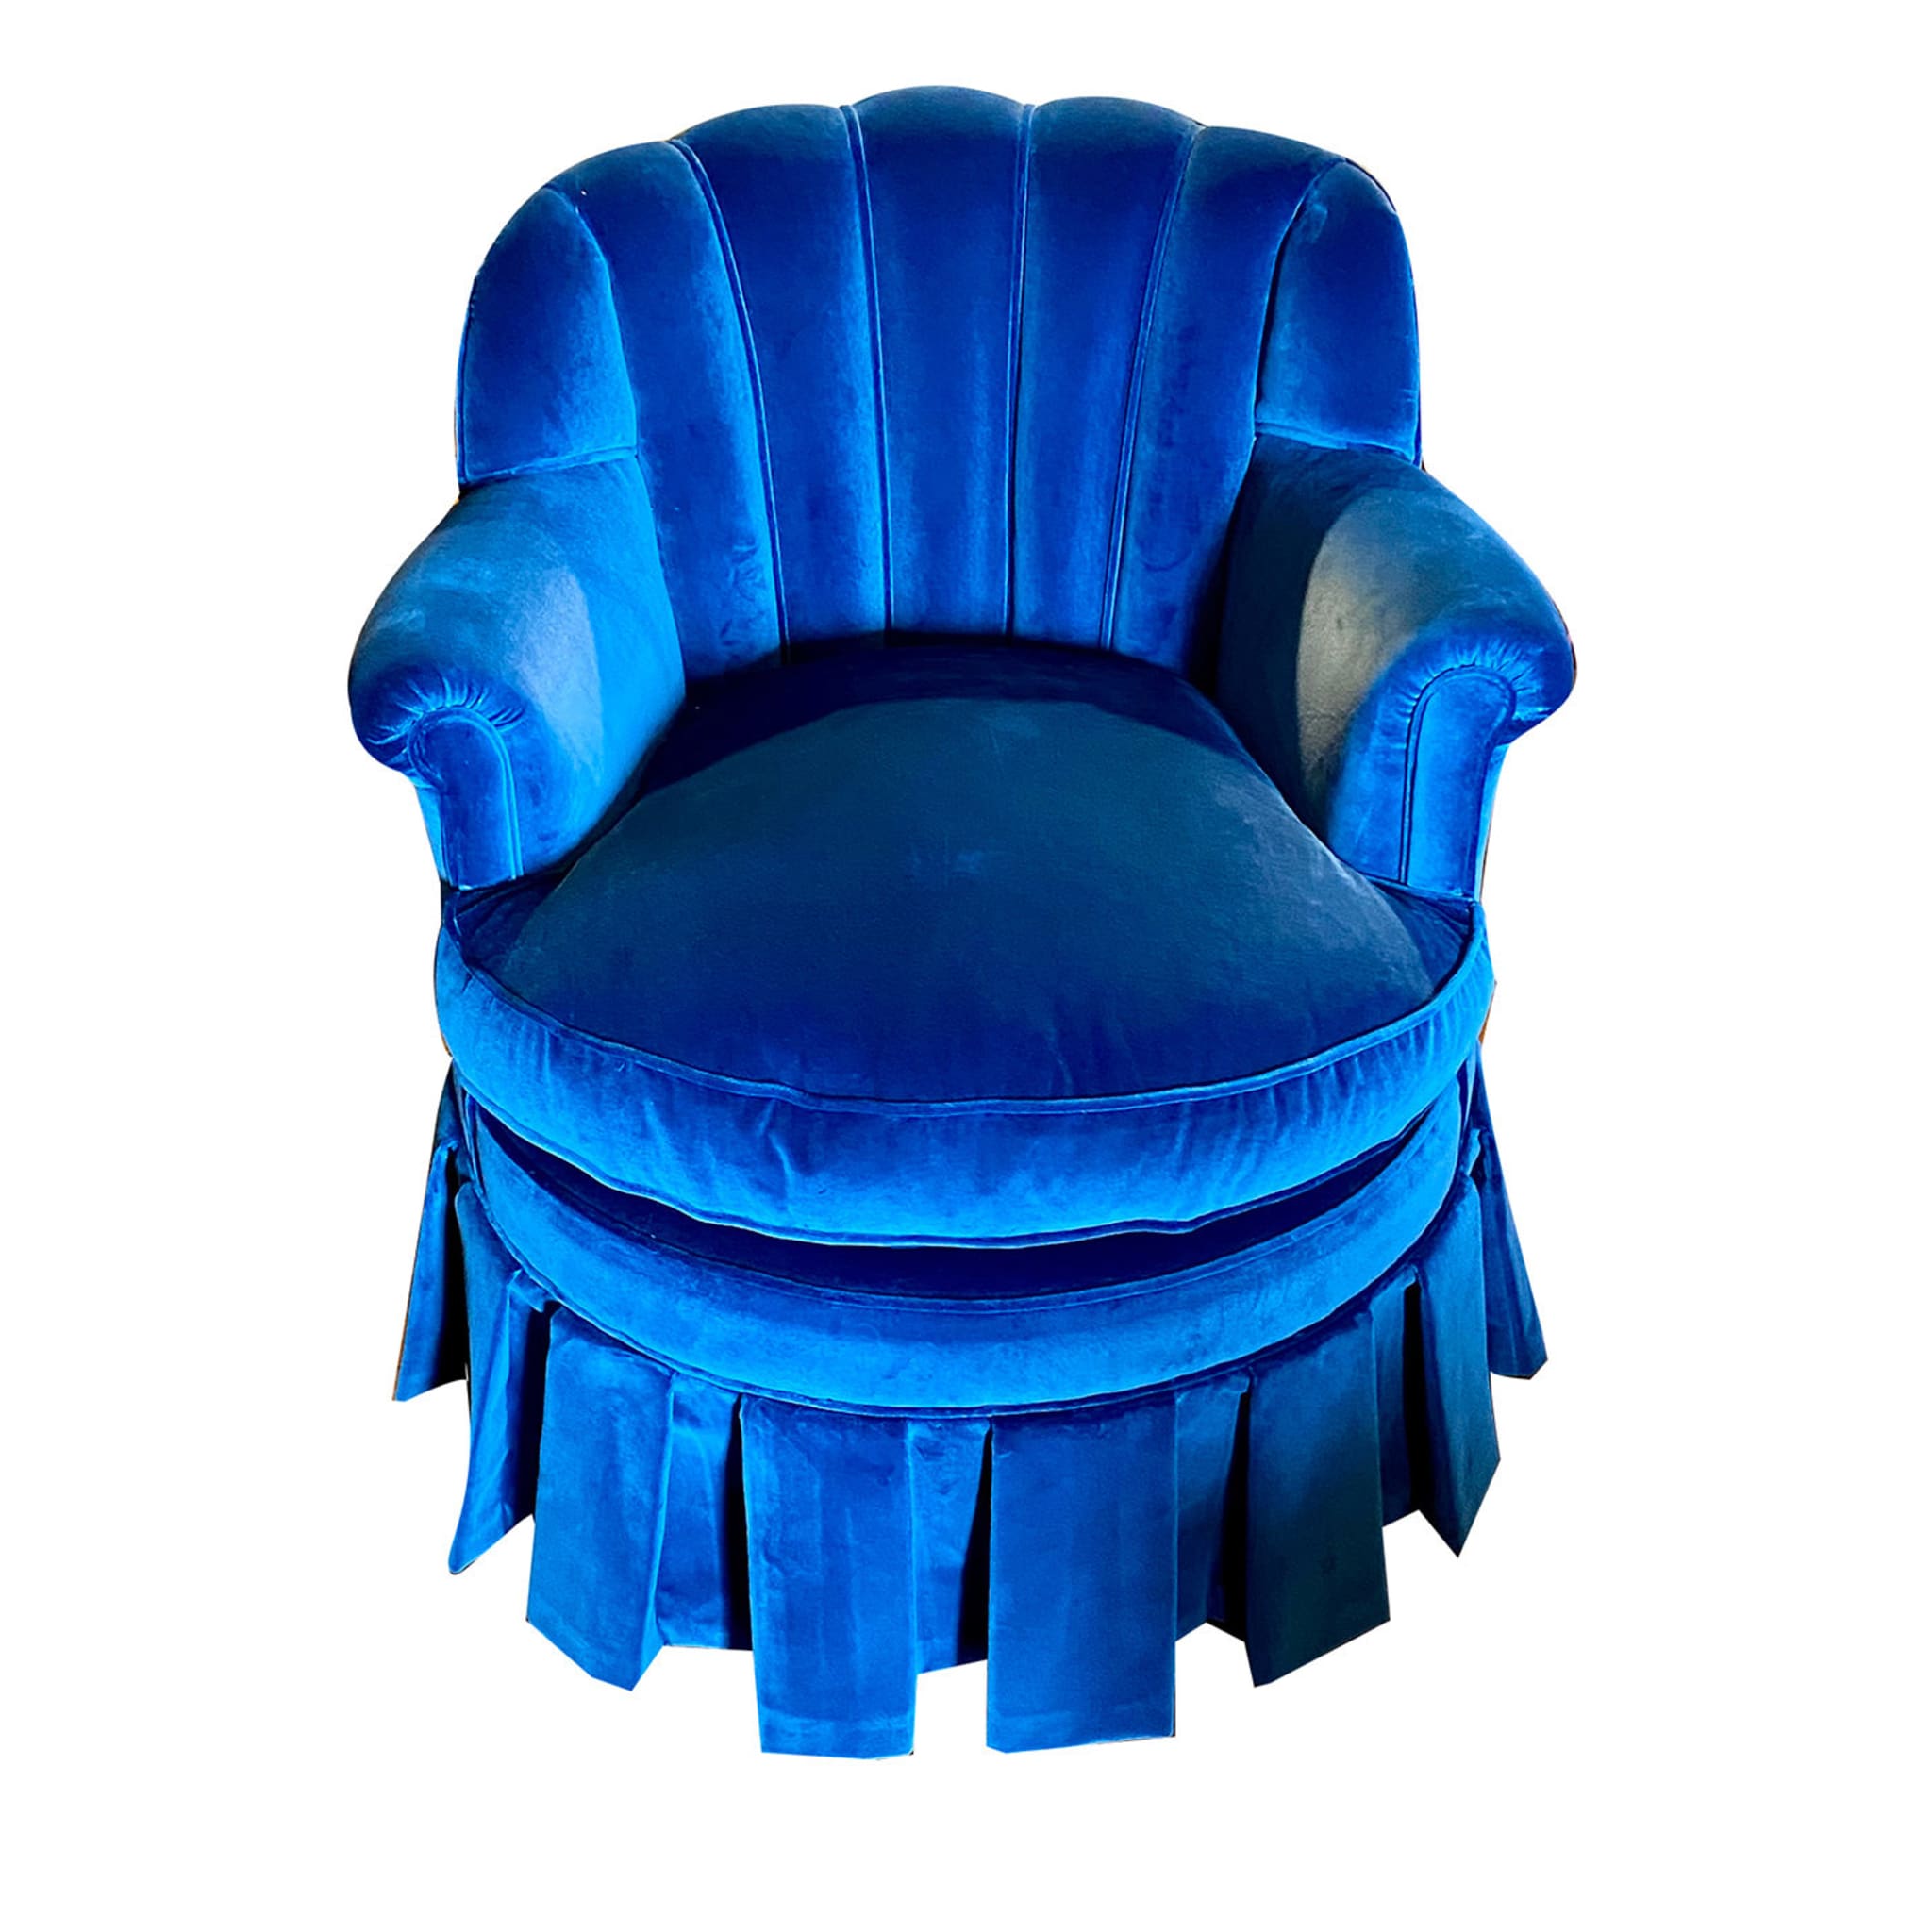 Conchiglia Blue Armchair - Main view